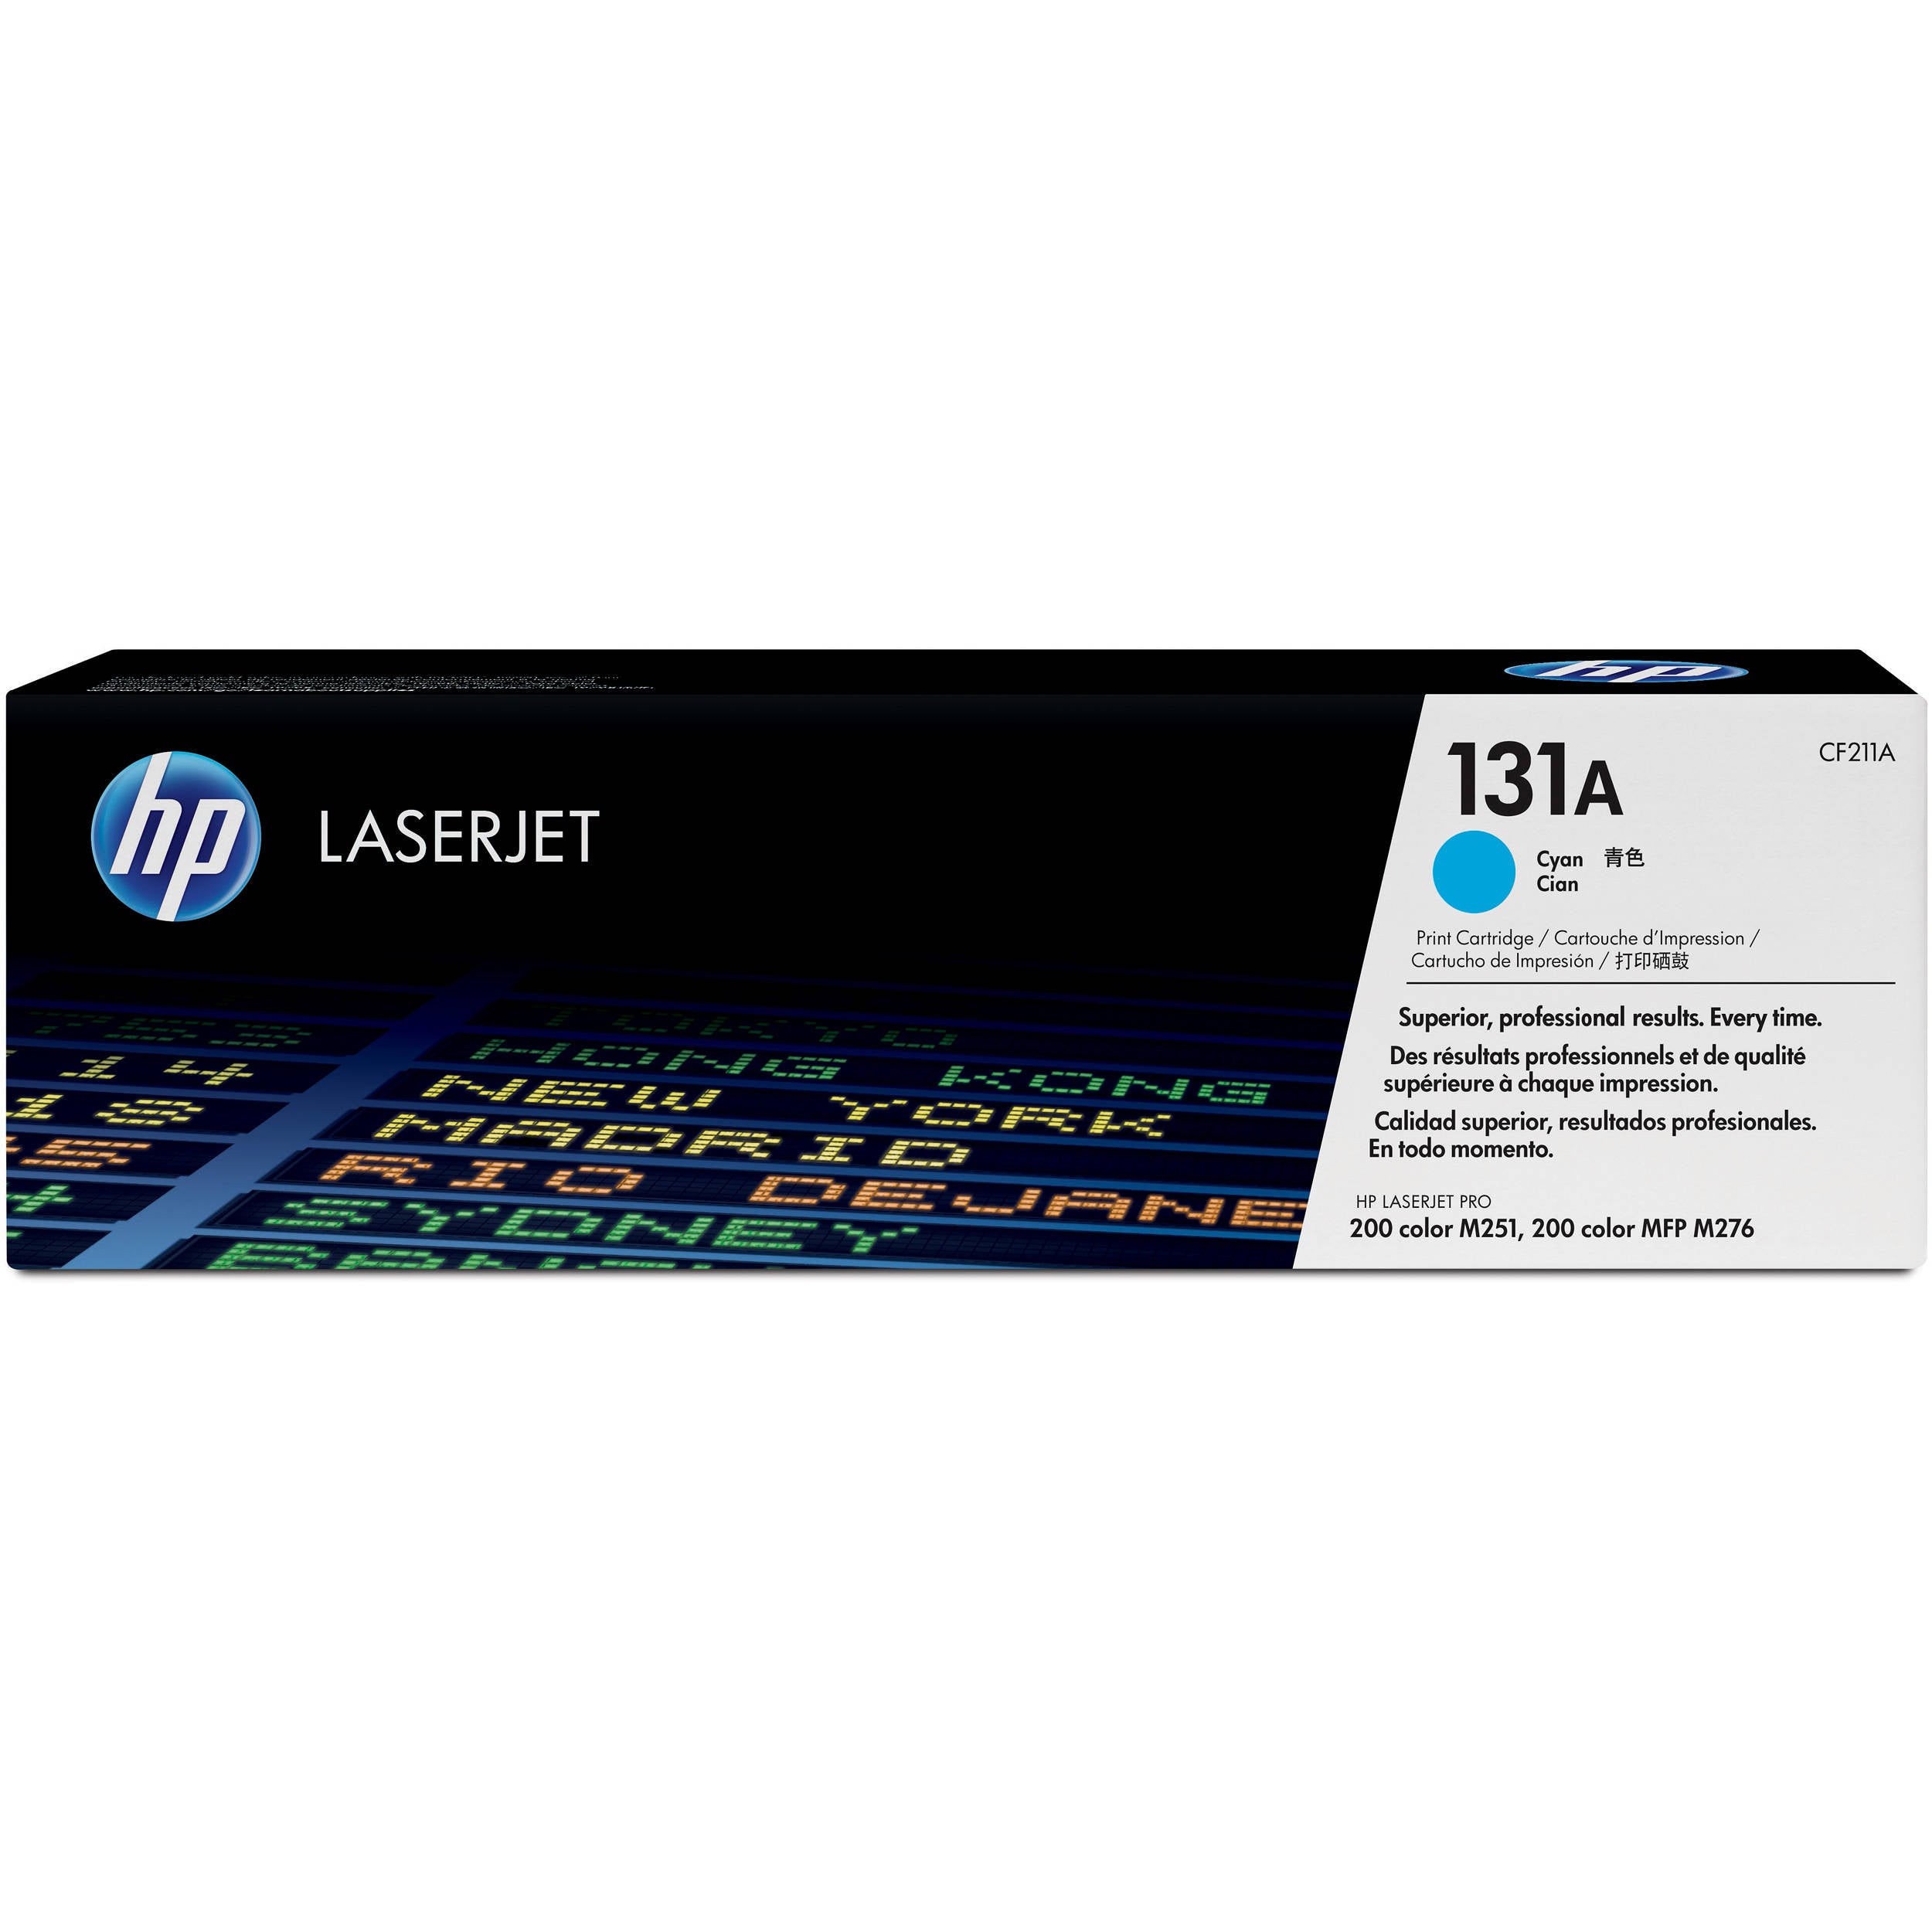 HP 131A Toner Cartridges for HP Colour LaserJet Pro 200 Color  M251 , M276 Series